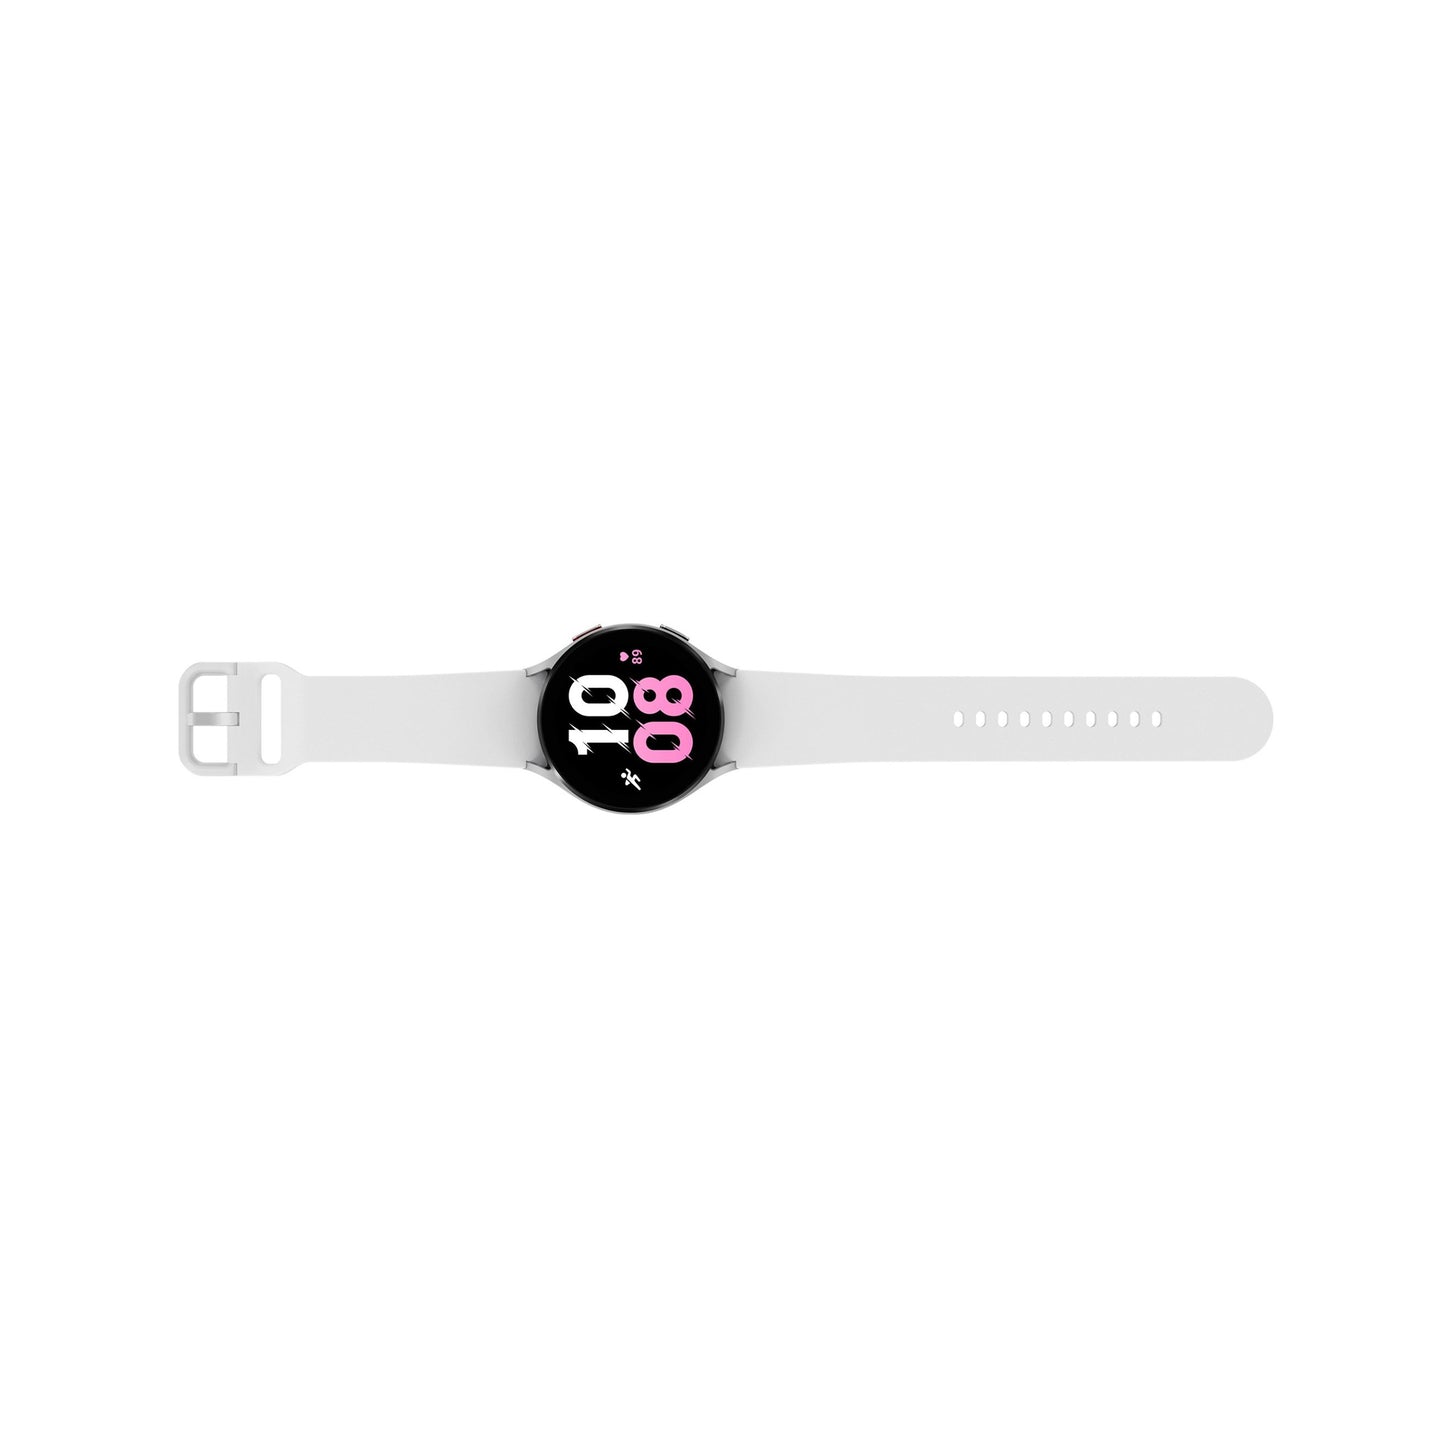 سامسونج - ساعة Galaxy Watch5 الذكية من الألومنيوم مقاس 44 ملم BT - فضي 